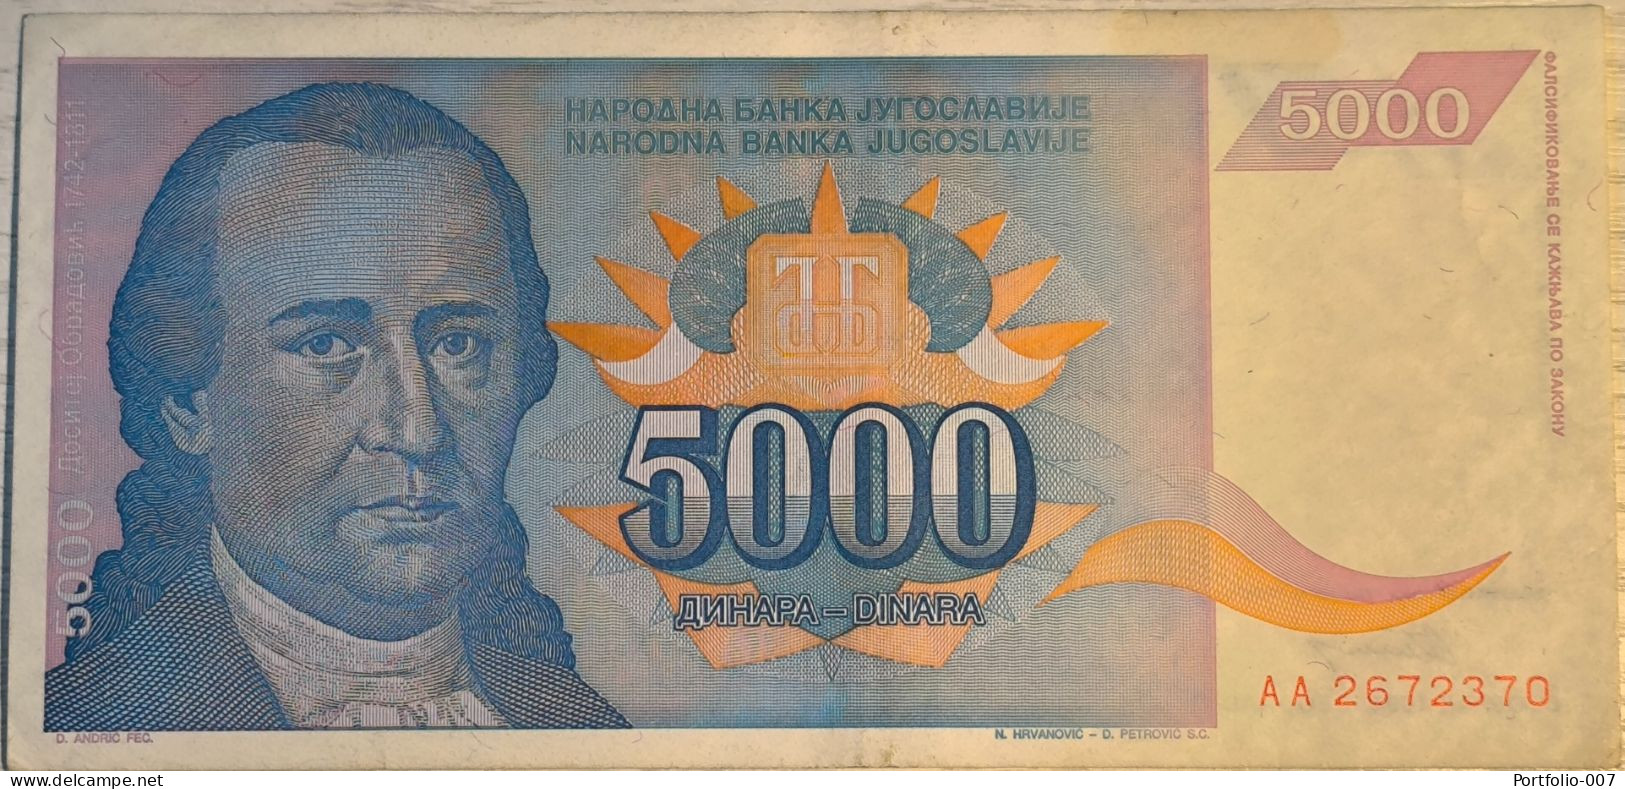 5000 Dinara, 1994. Yugoslavia - Joegoslavië